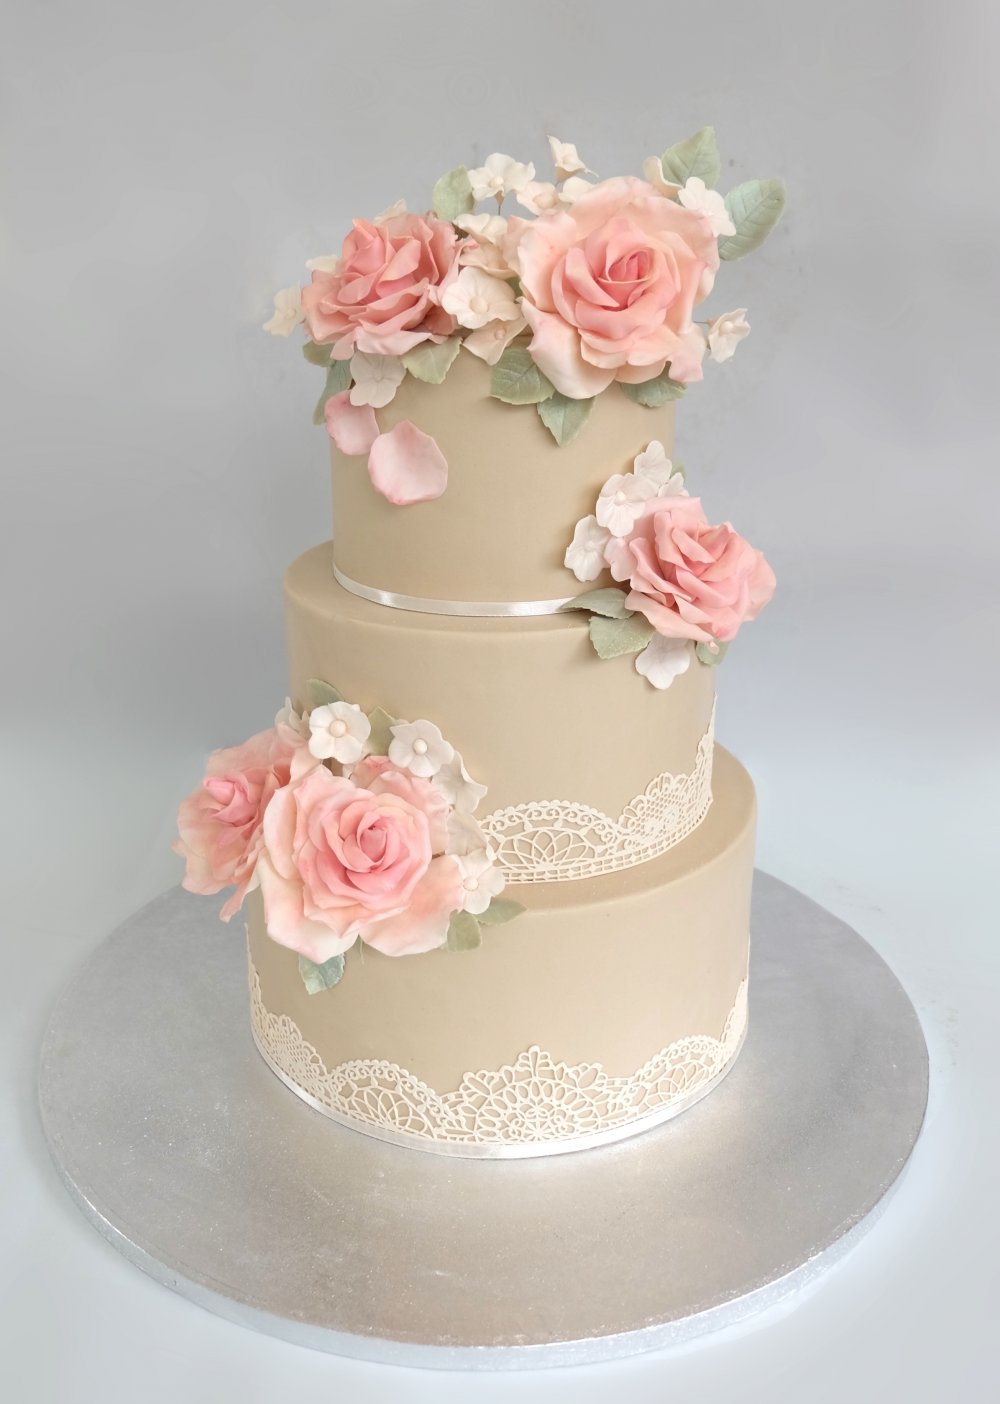 Нежный торт в приглушенной гамме с сахарными цветами, обтяжкой сложного бежевого цвета и сатиновыми лентами.